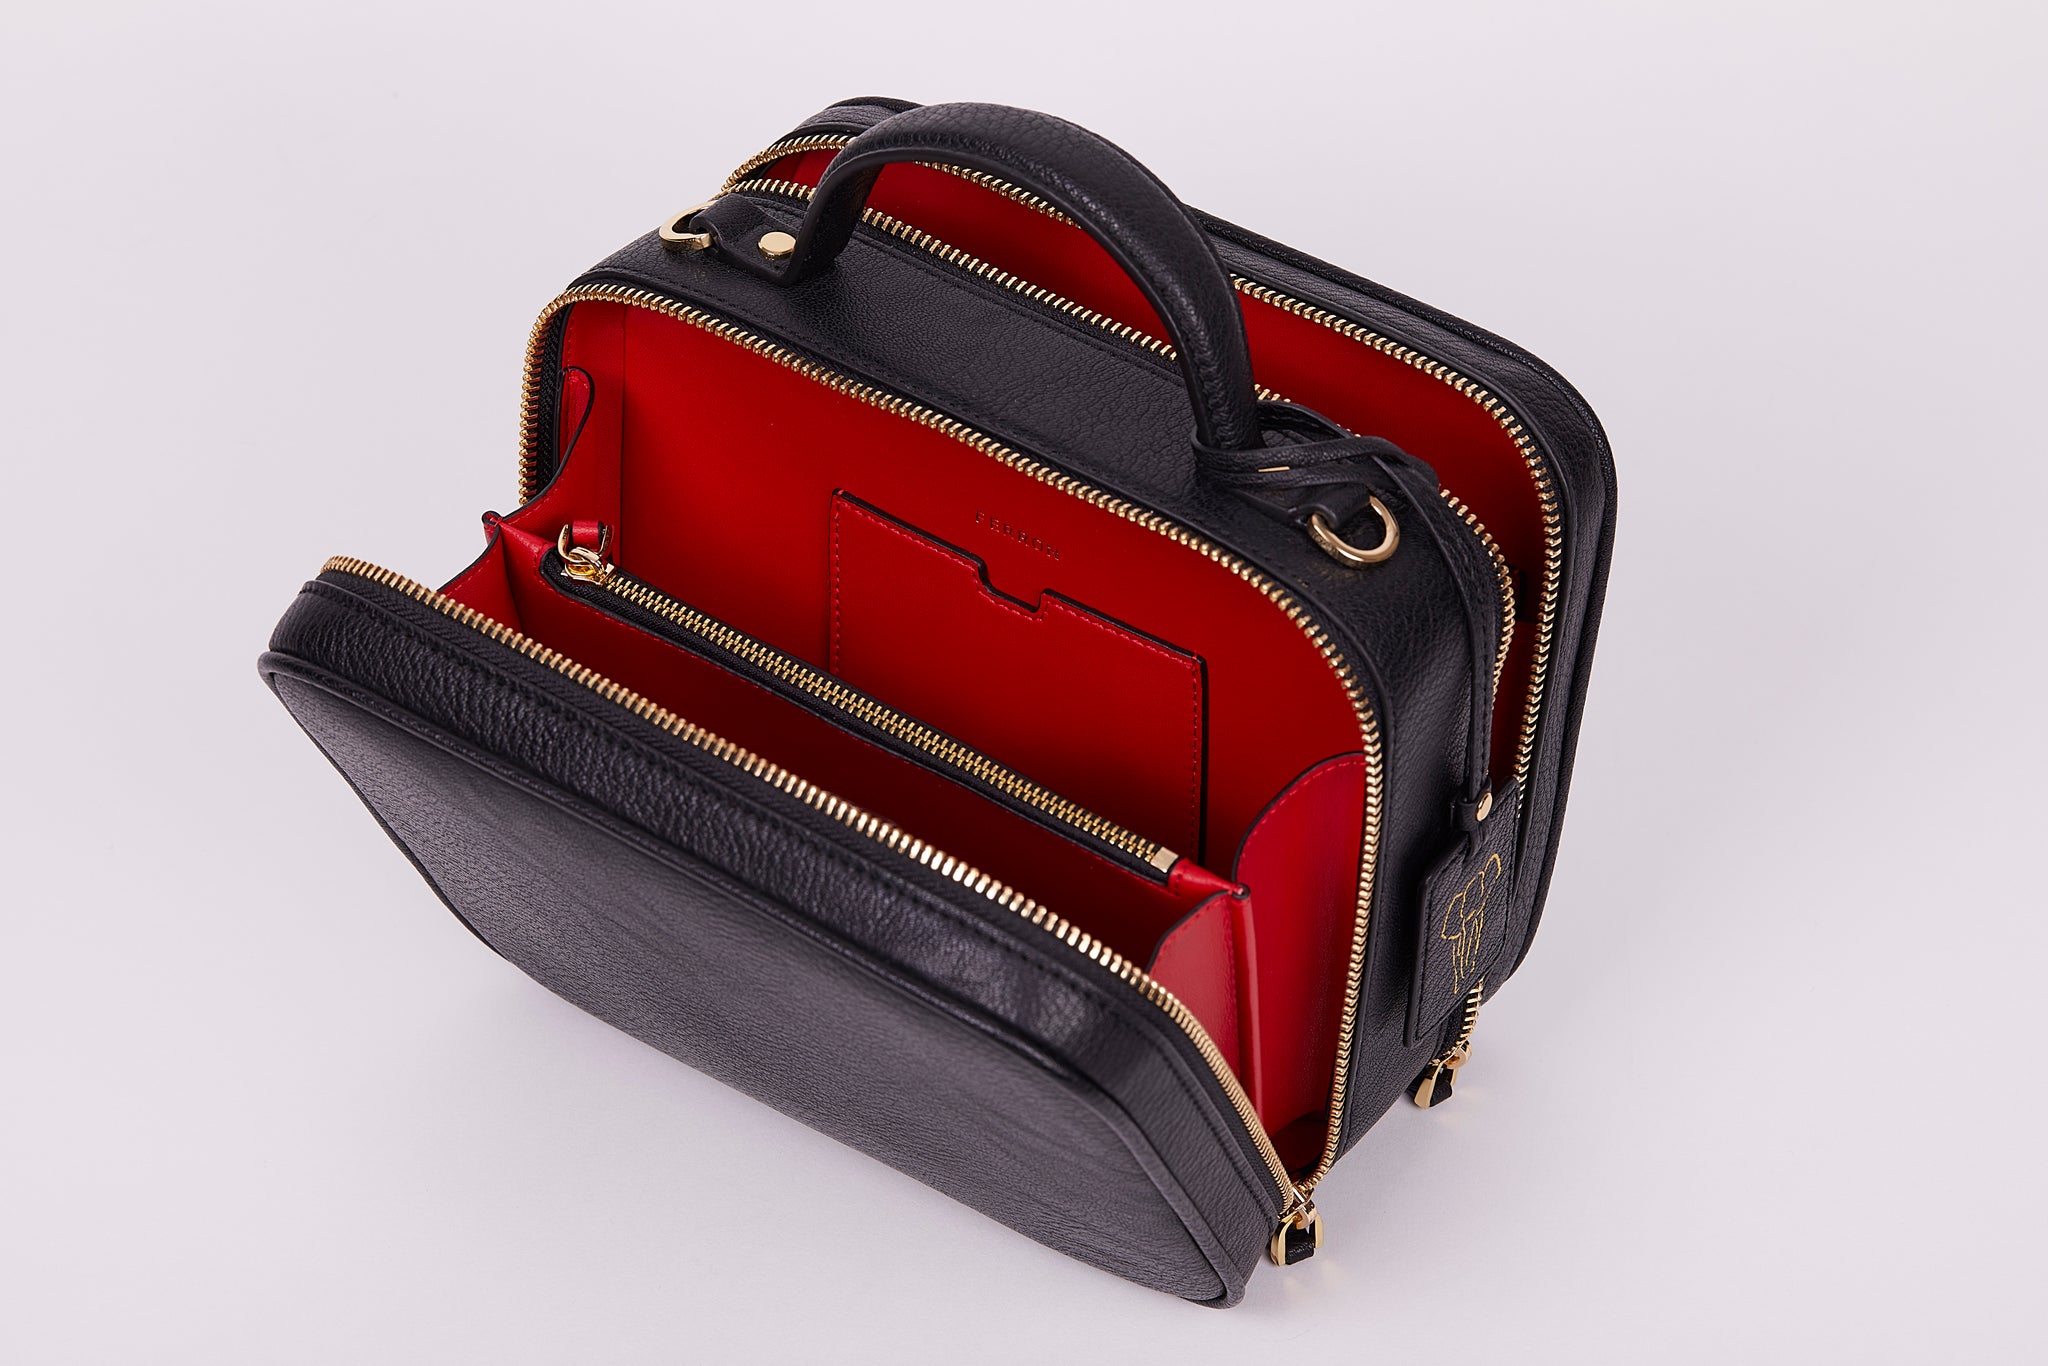 FERRON Vegan Signature Crossbody bag in black with luxurious red interior